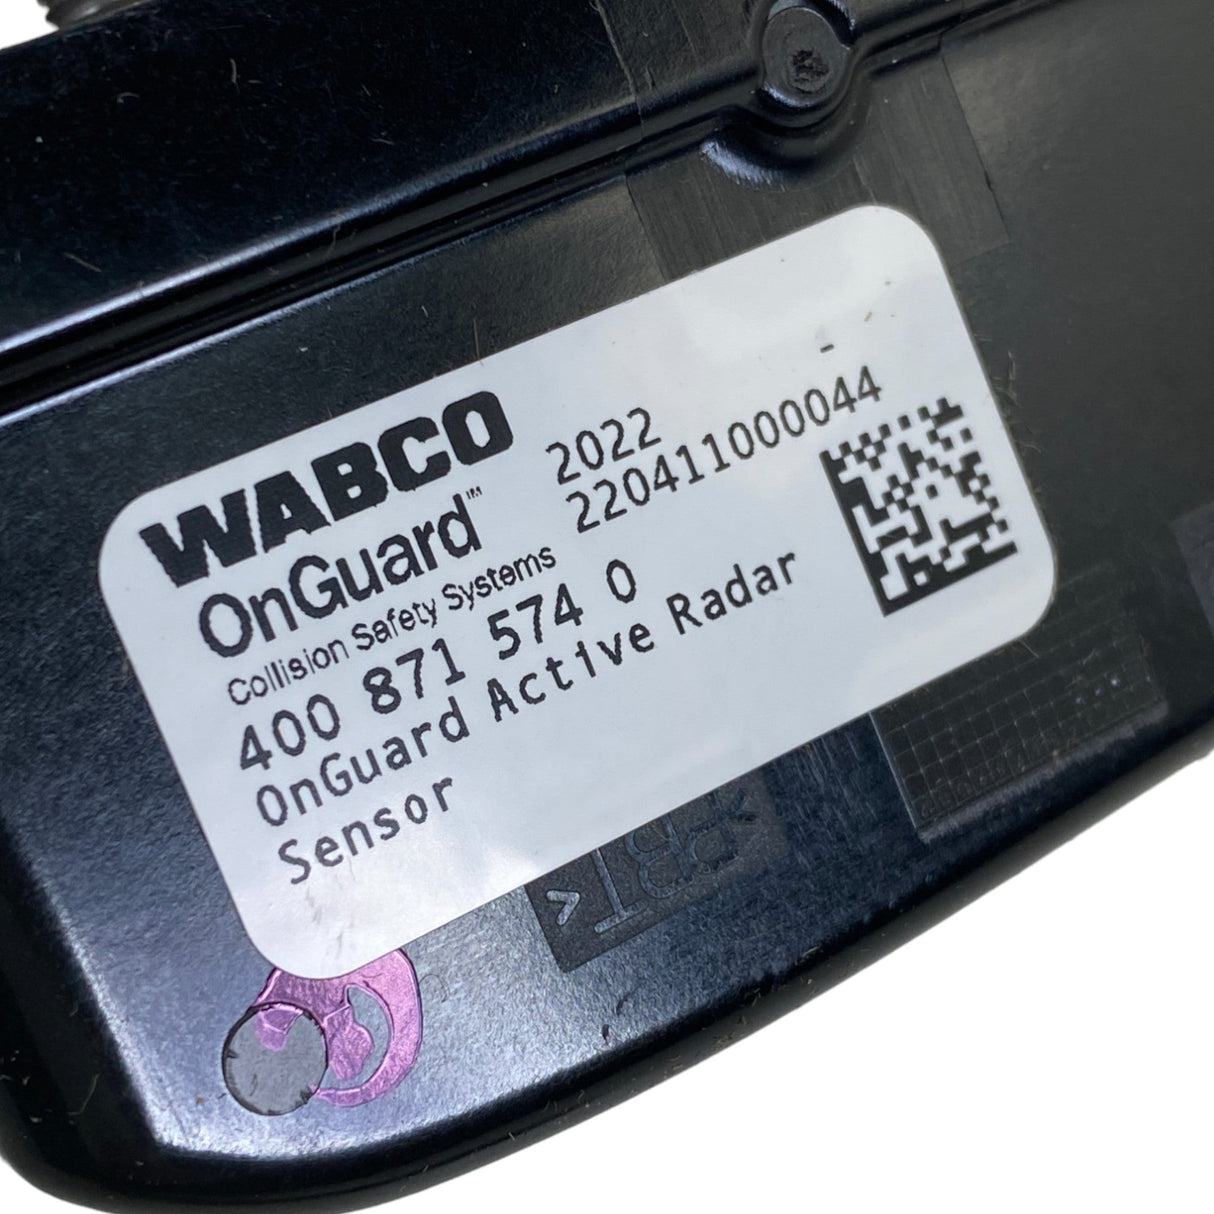 WAB4008715740 Genuine Wabco ADAS Onguard Radar Distance Sensor Assembly